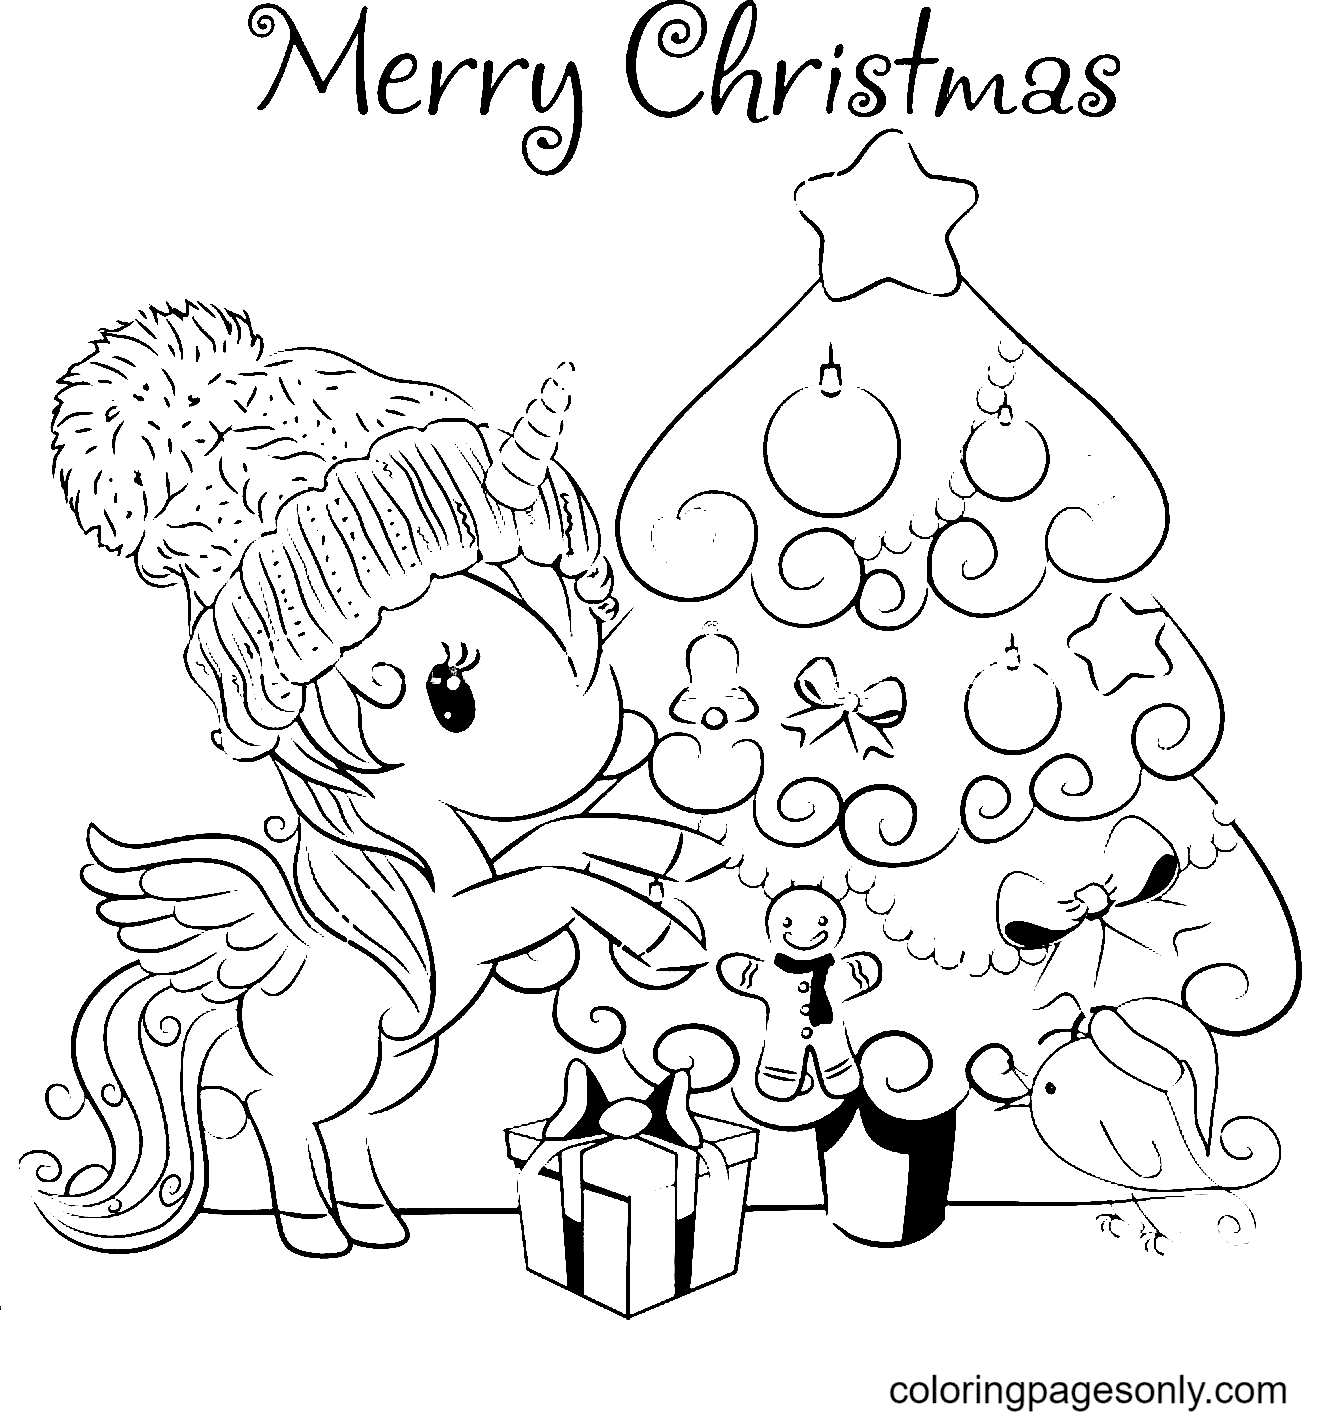 شجرة عيد الميلاد ووحيد القرن من حيوانات عيد الميلاد